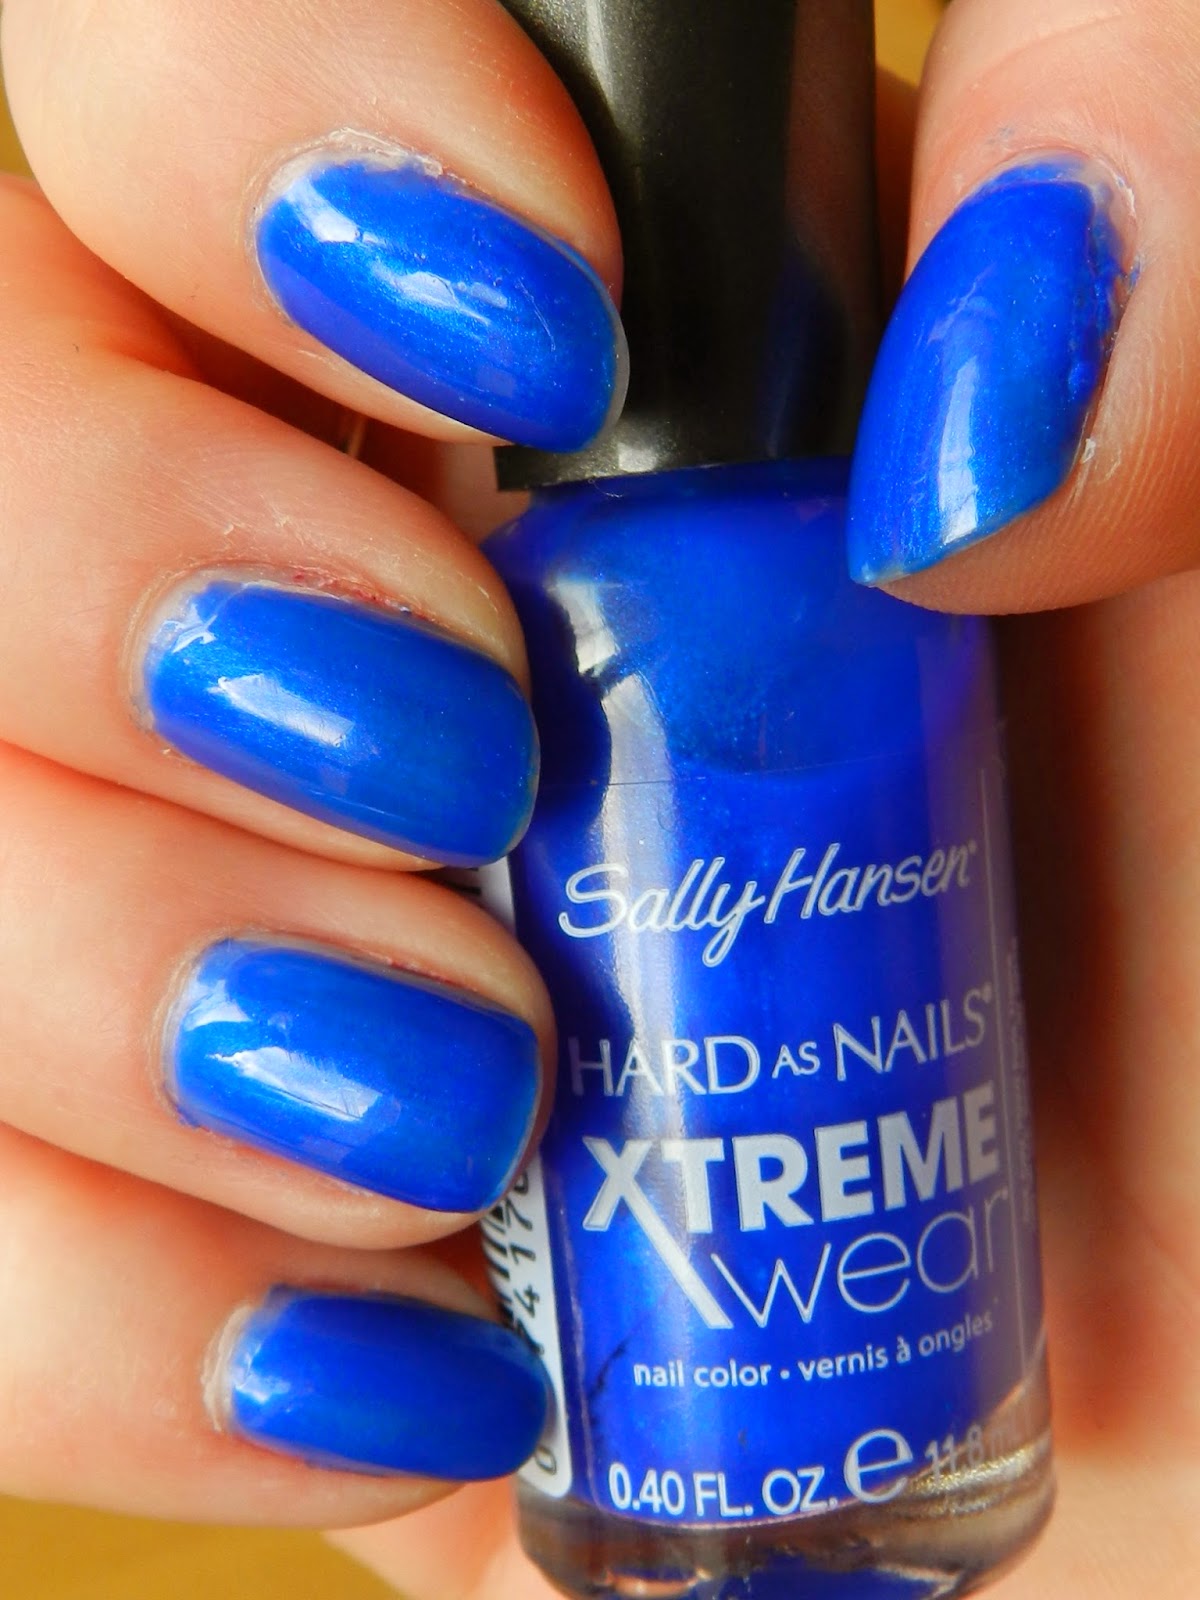 Unfade what fades: Sally Hansen Hard as Nails Extreme Wear nail polish ...